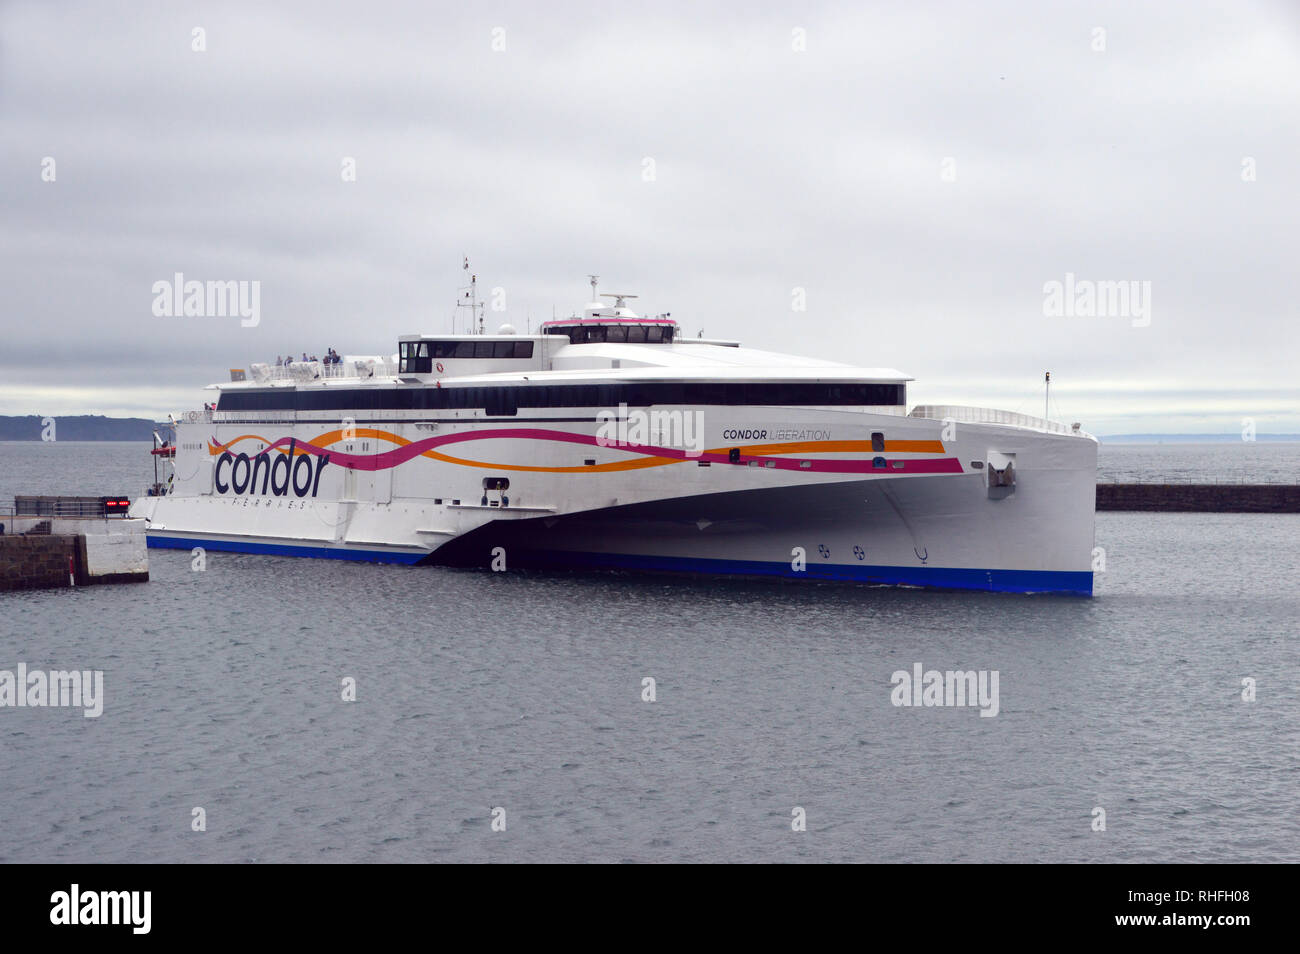 Le trimaran à grande vitesse Condor Car-ferry "Libération" entre dans le port de St Peter Port à Guernesey, îles Anglo-Normandes.UK. Banque D'Images